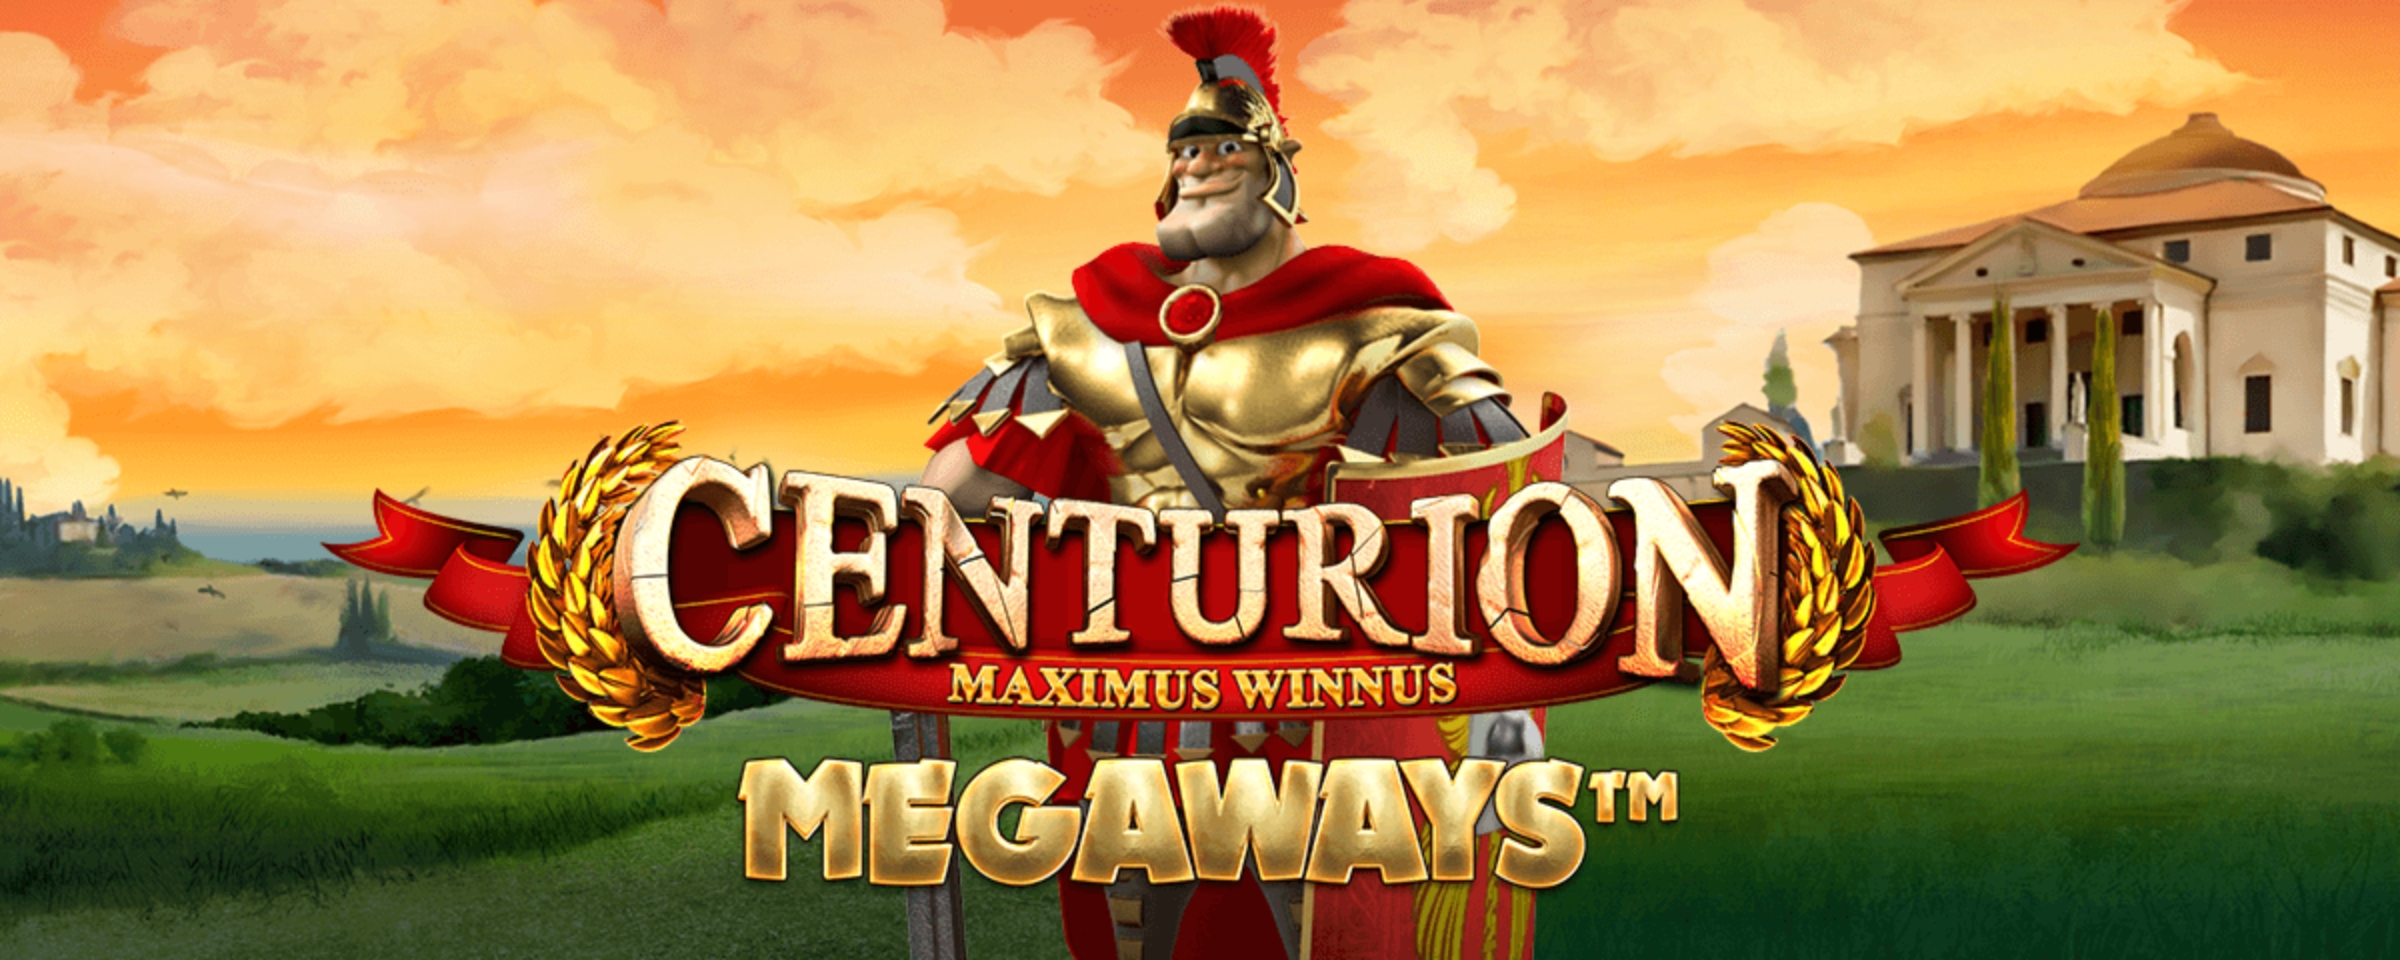 Centurion Megaways demo